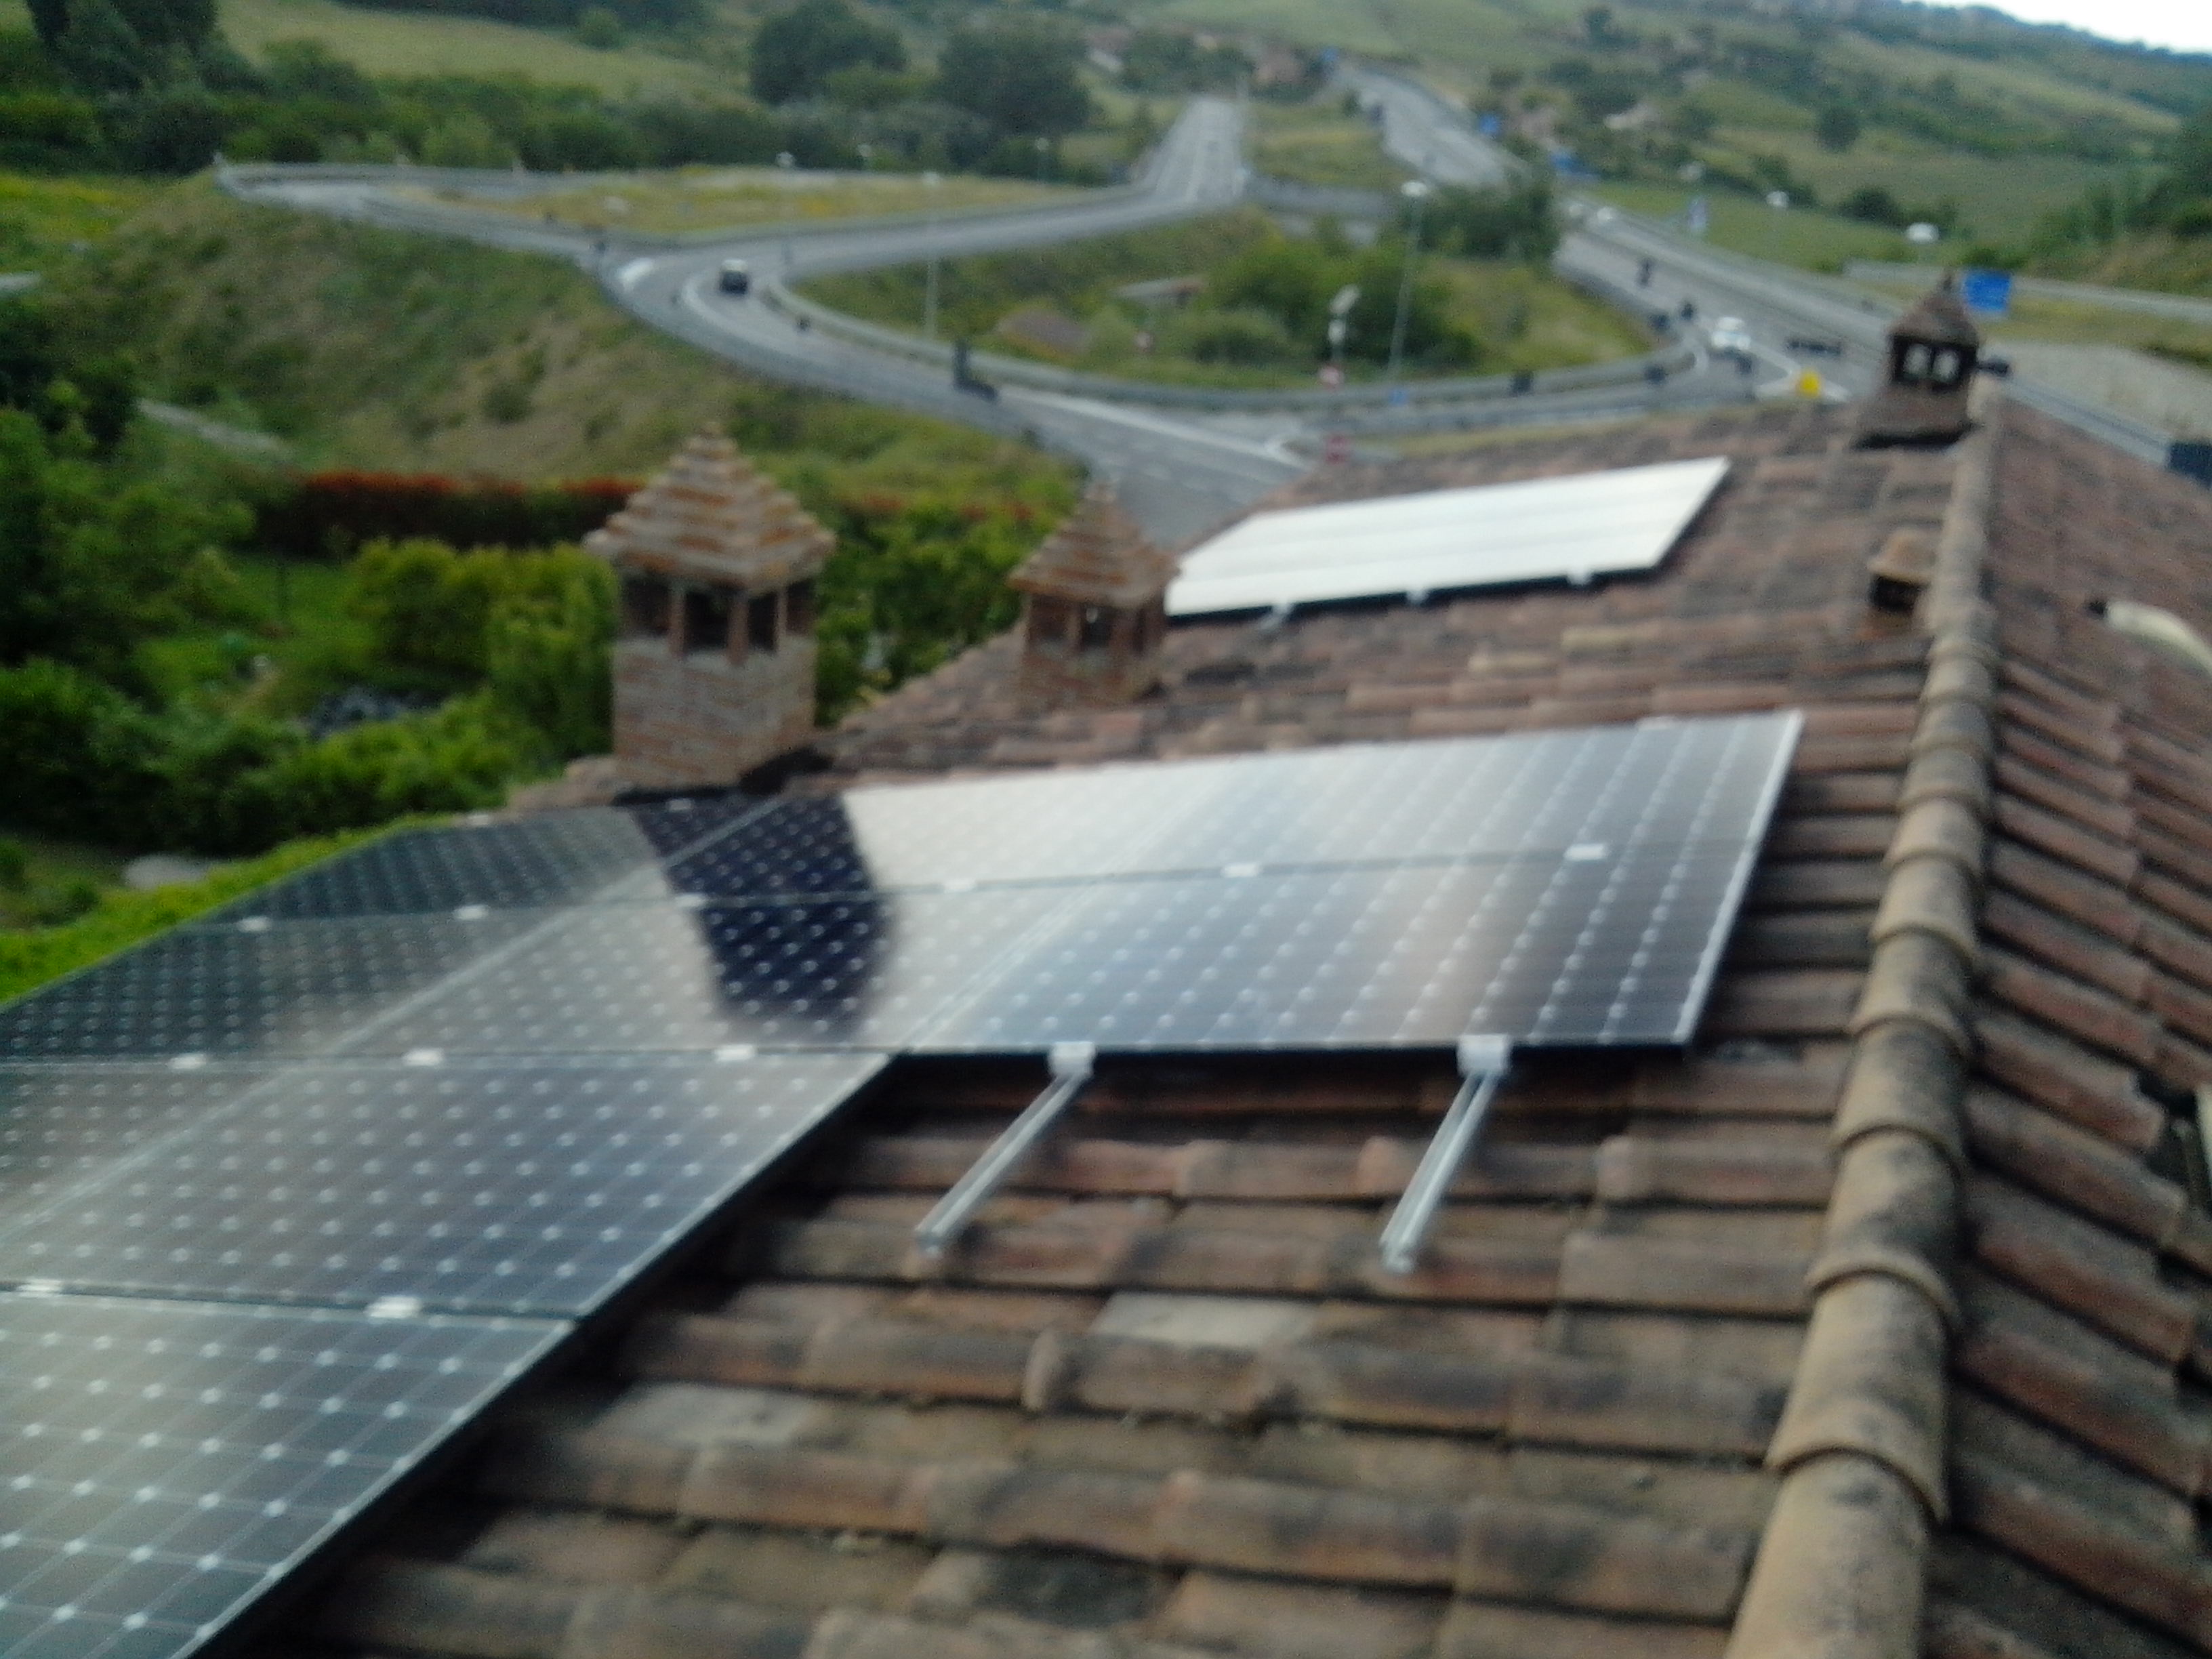 Impianto Impianti Solari Fotovoltaici 2016. Cogli le opportunità e la convenienza SunPower della Lightland a Taverne d'Arbia, Milano, 